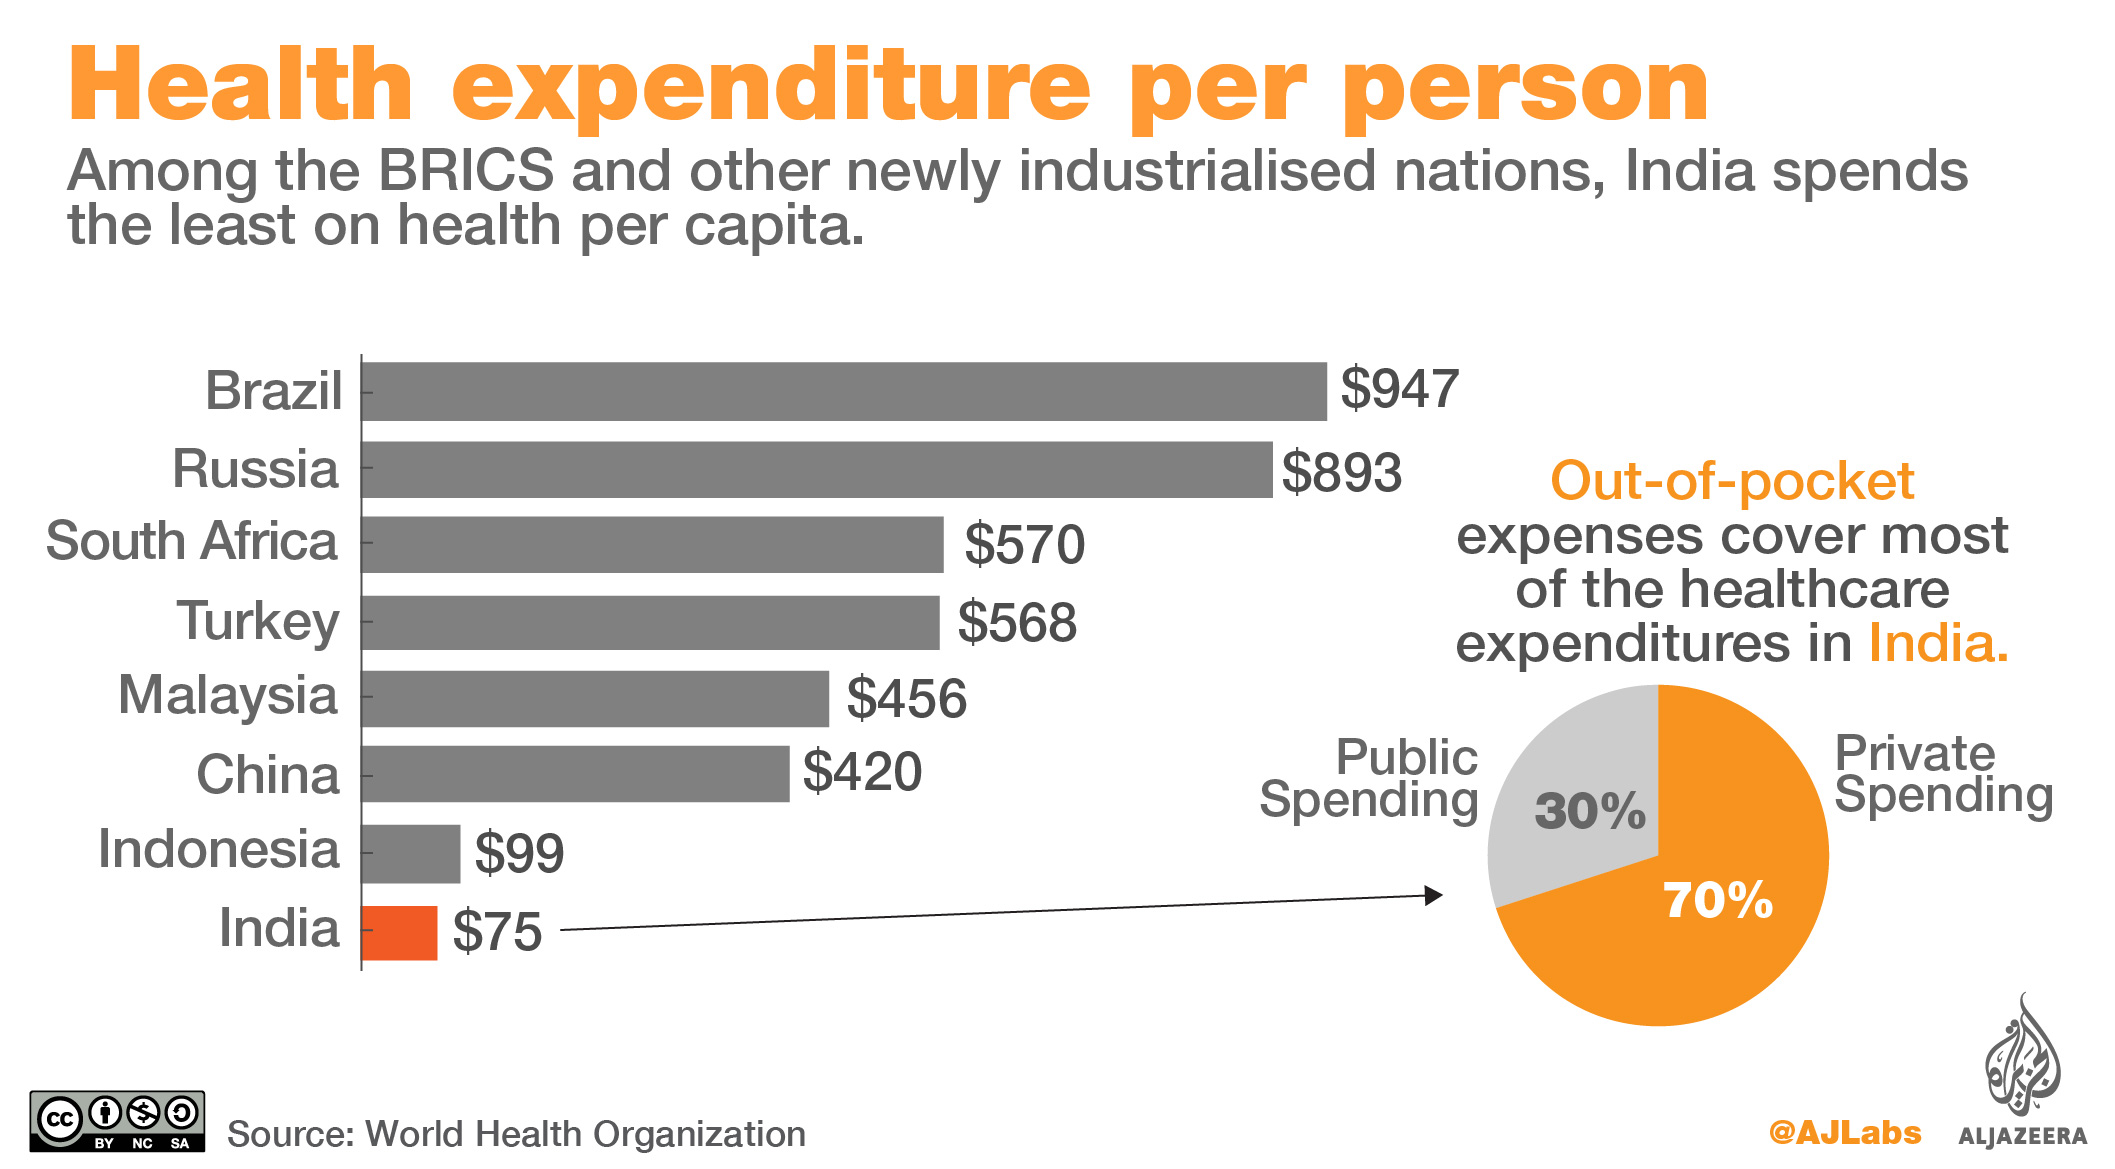 India Health expenditure per capita